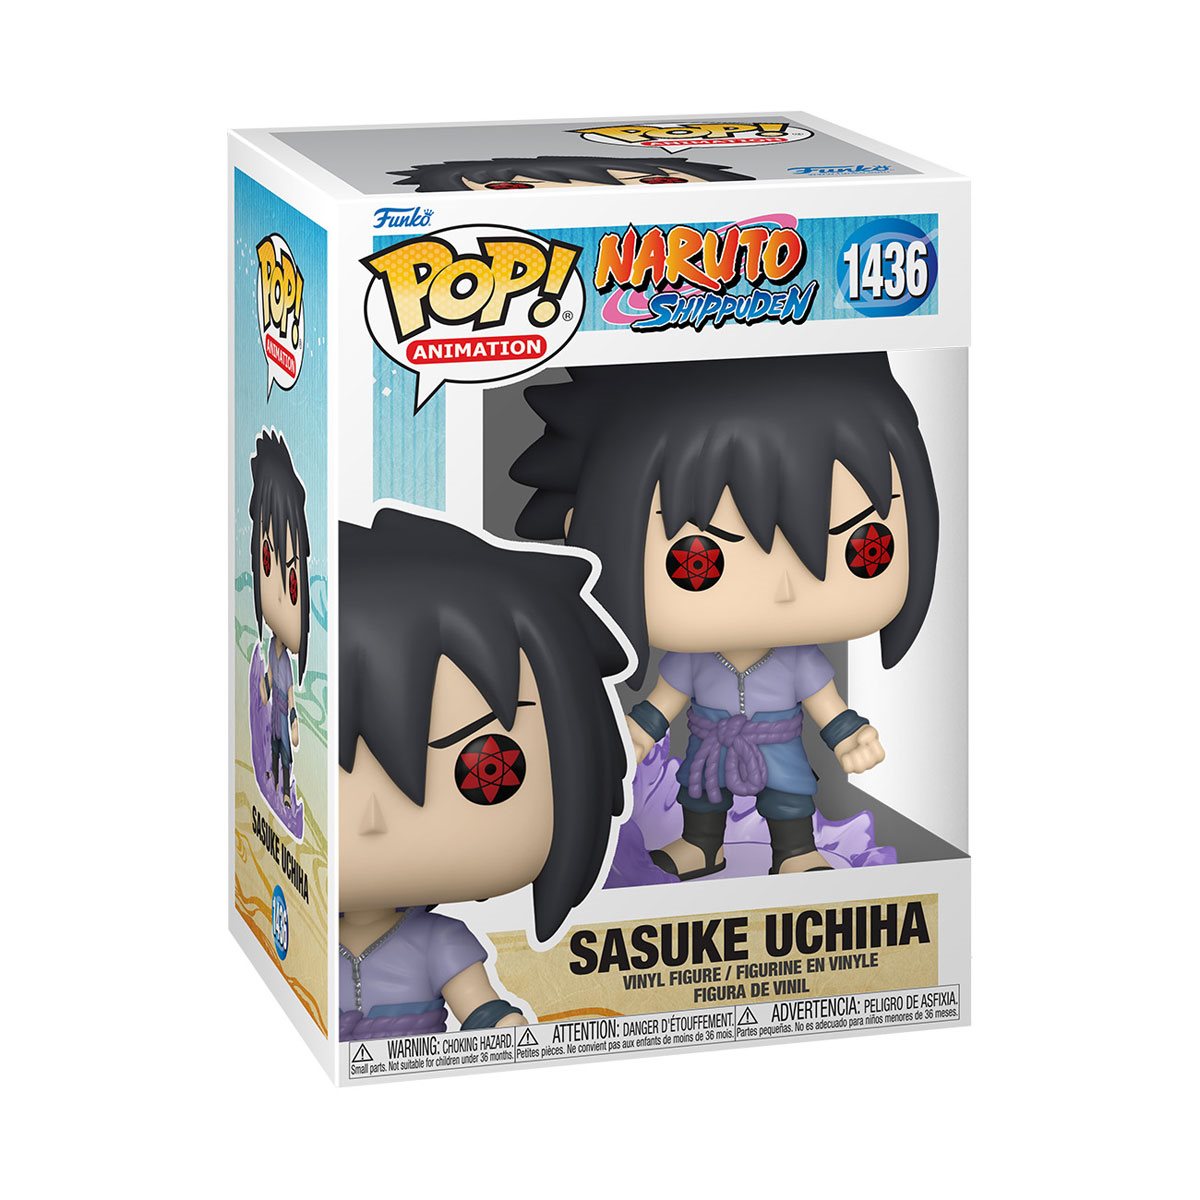 Naruto: Shippuden Sasuke Uchiha (First Susano'o) Funko Pop!